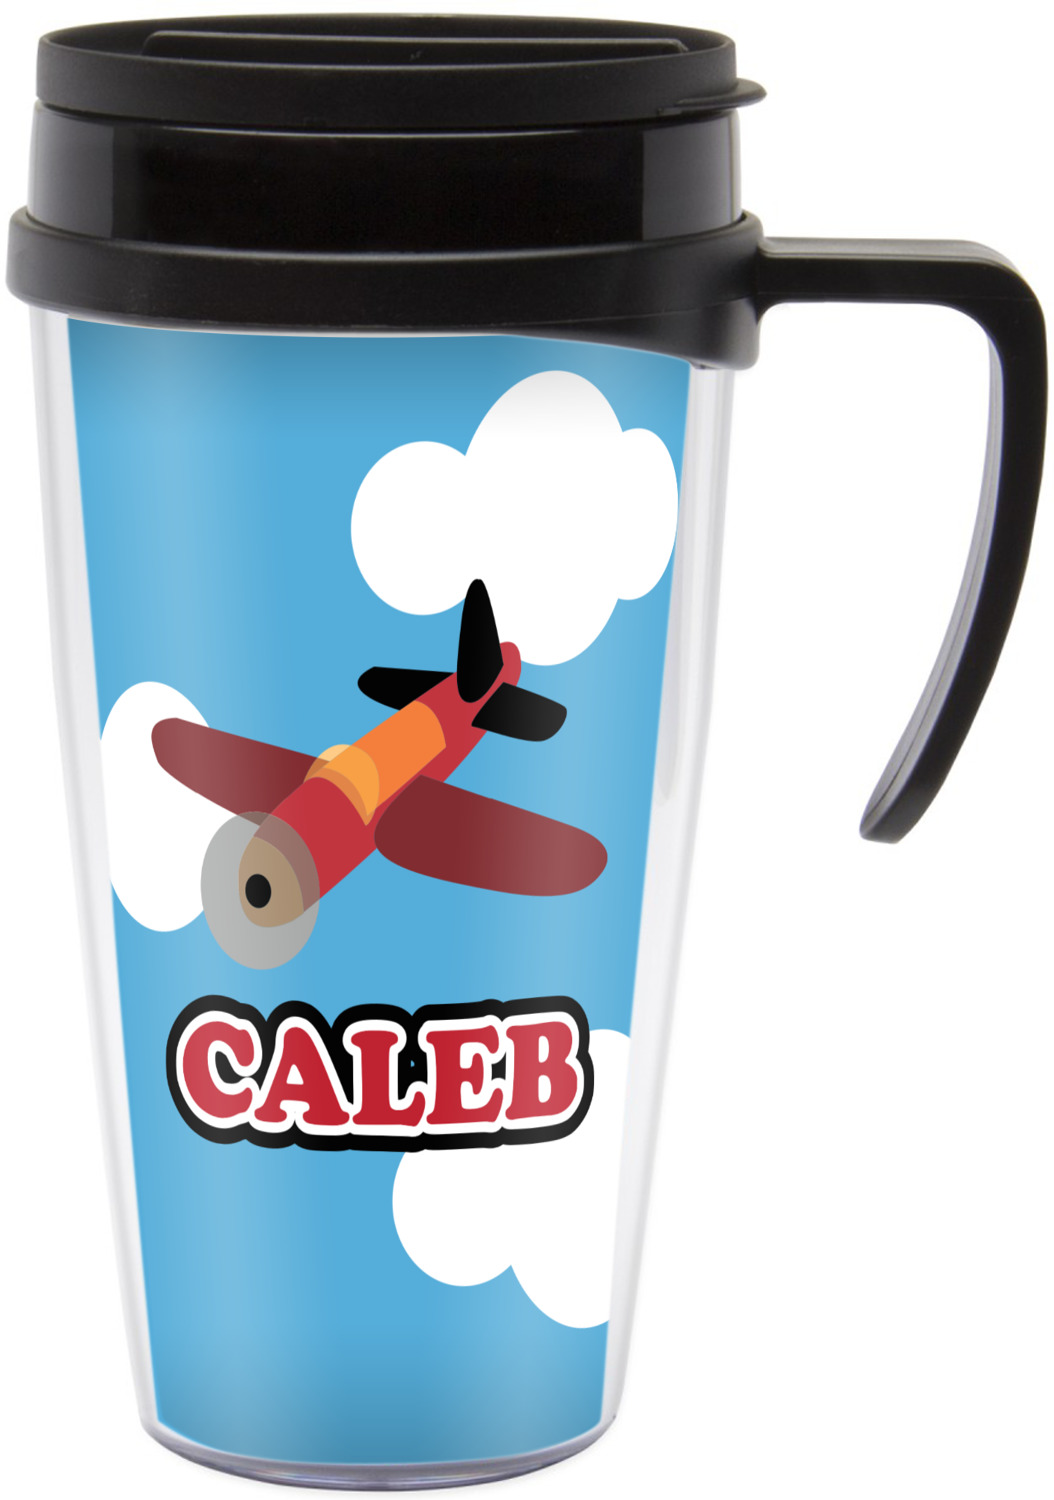 airplane travel mug